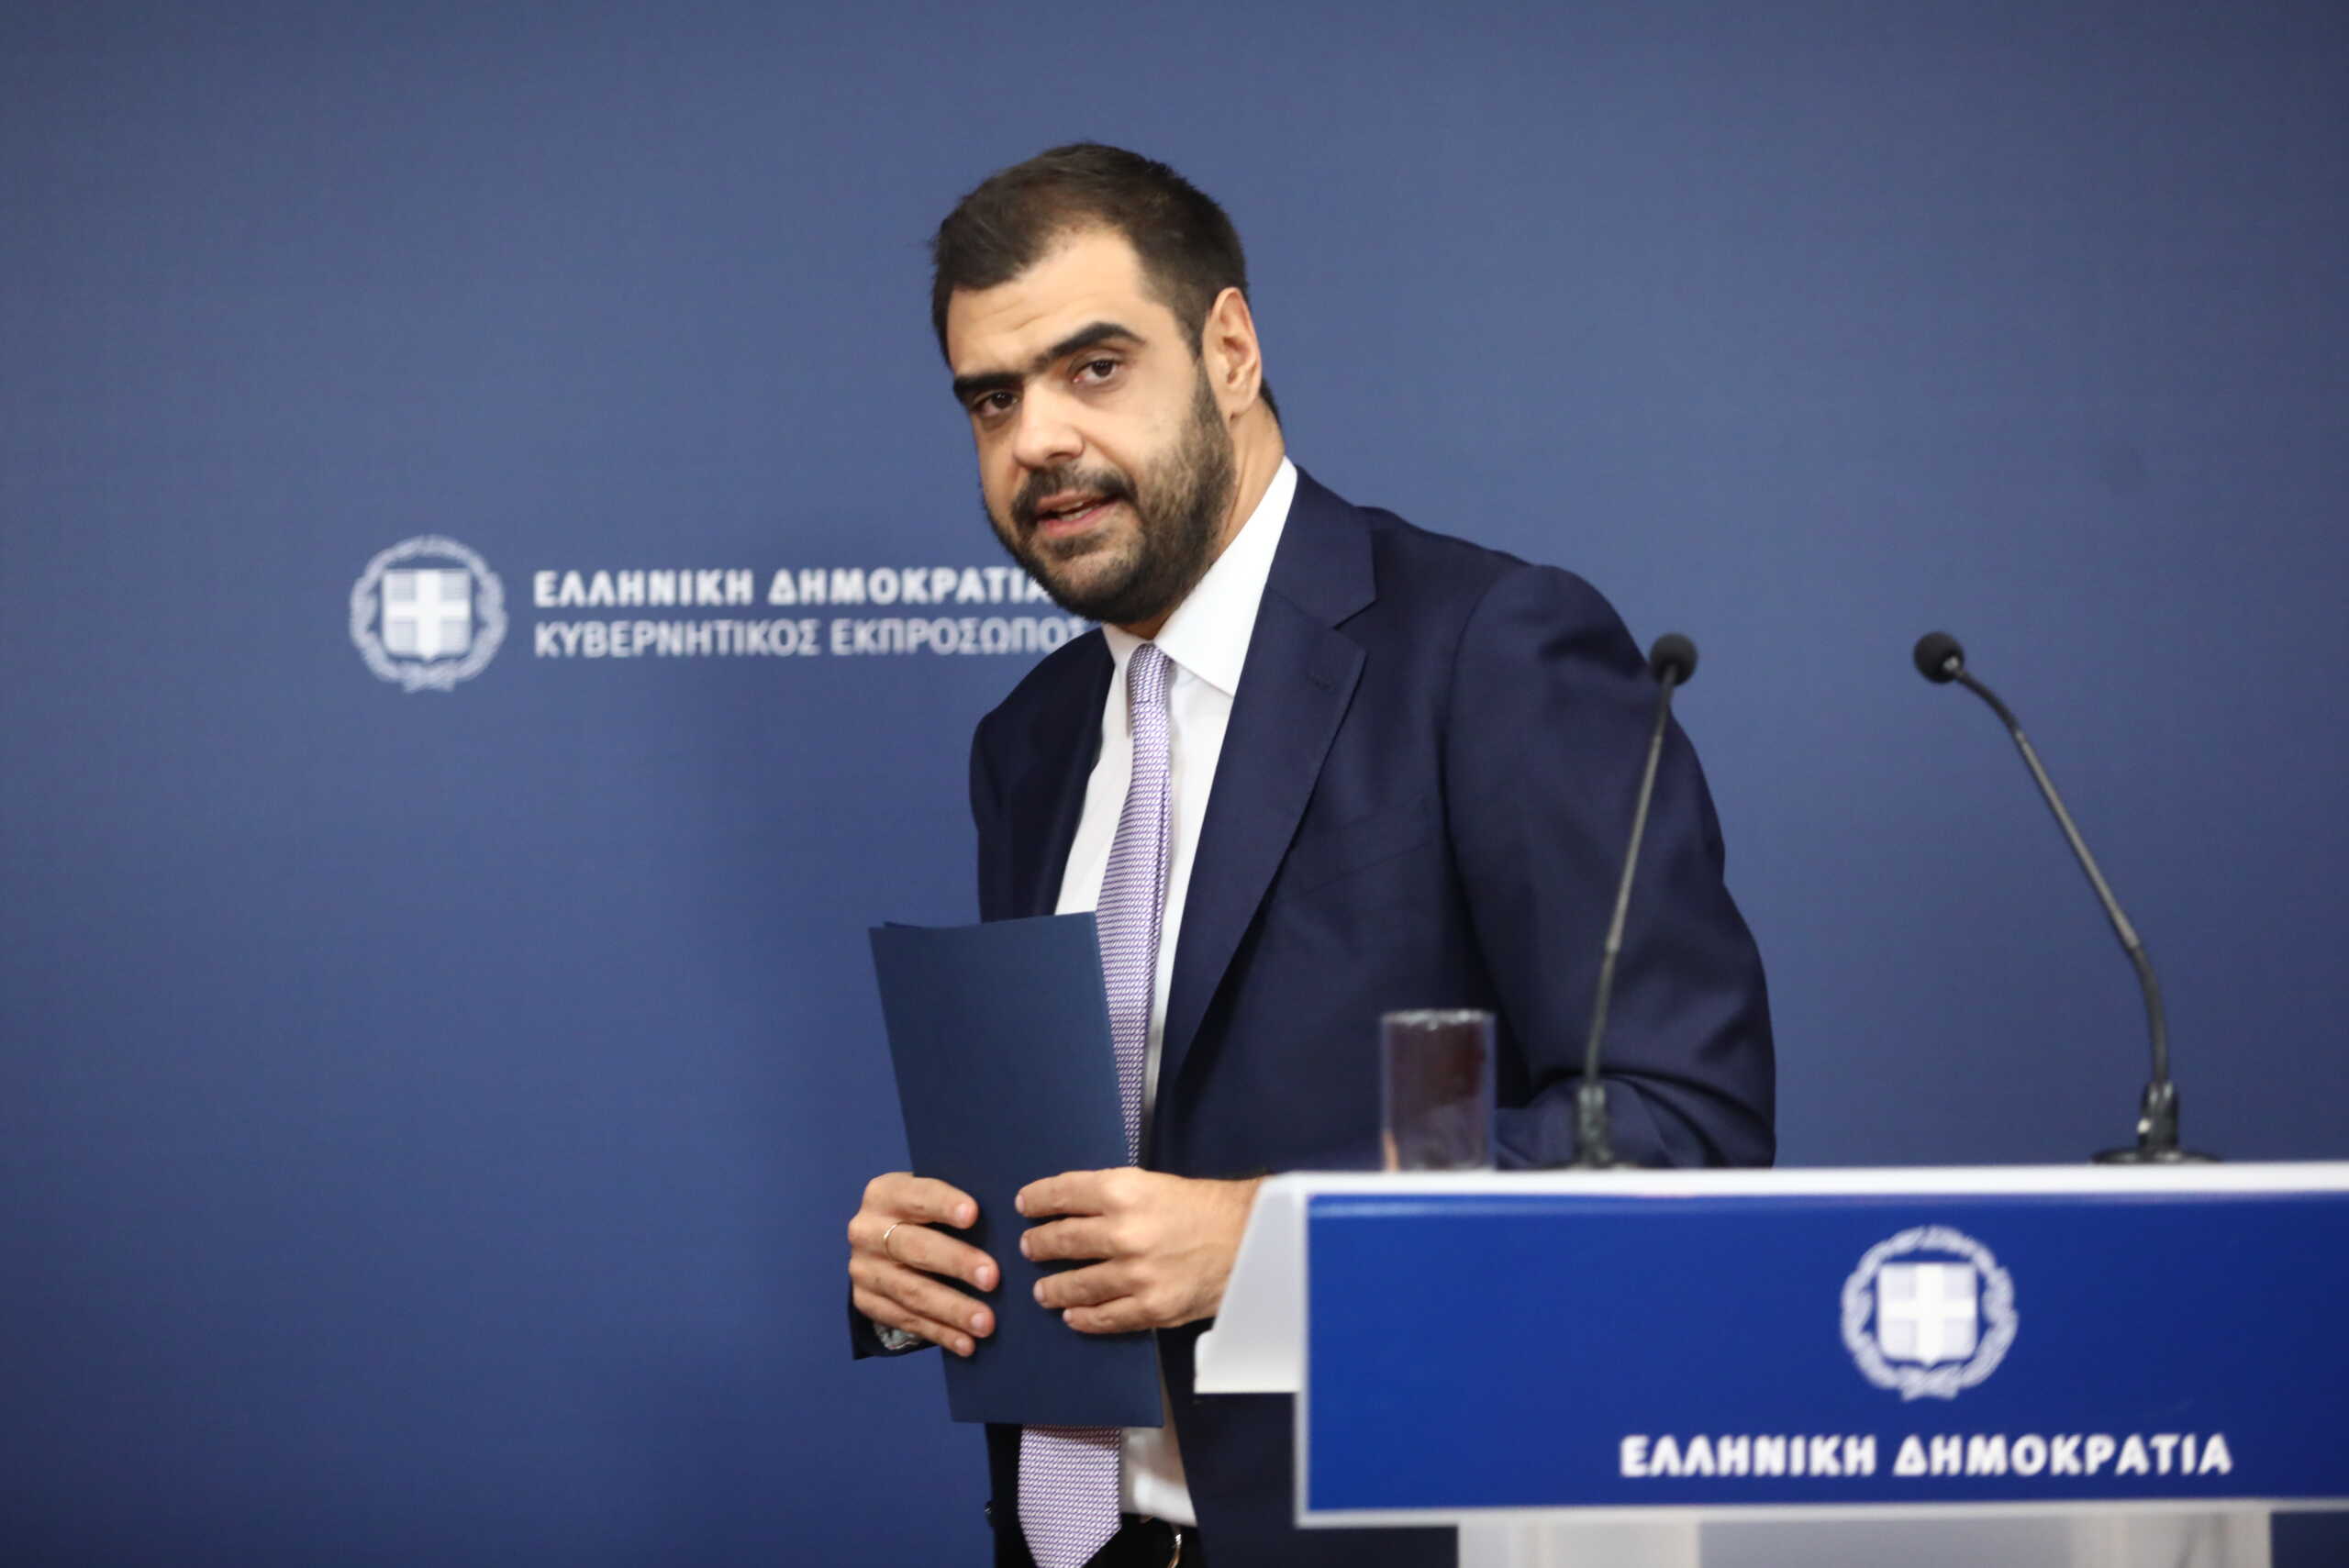 Παύλος Μαρινάκης: «Πολάκεια» η ανακοίνωση Κασσελάκη – Να κάνουν στο ΣΥΡΙΖΑ την αυτοκριτική τους